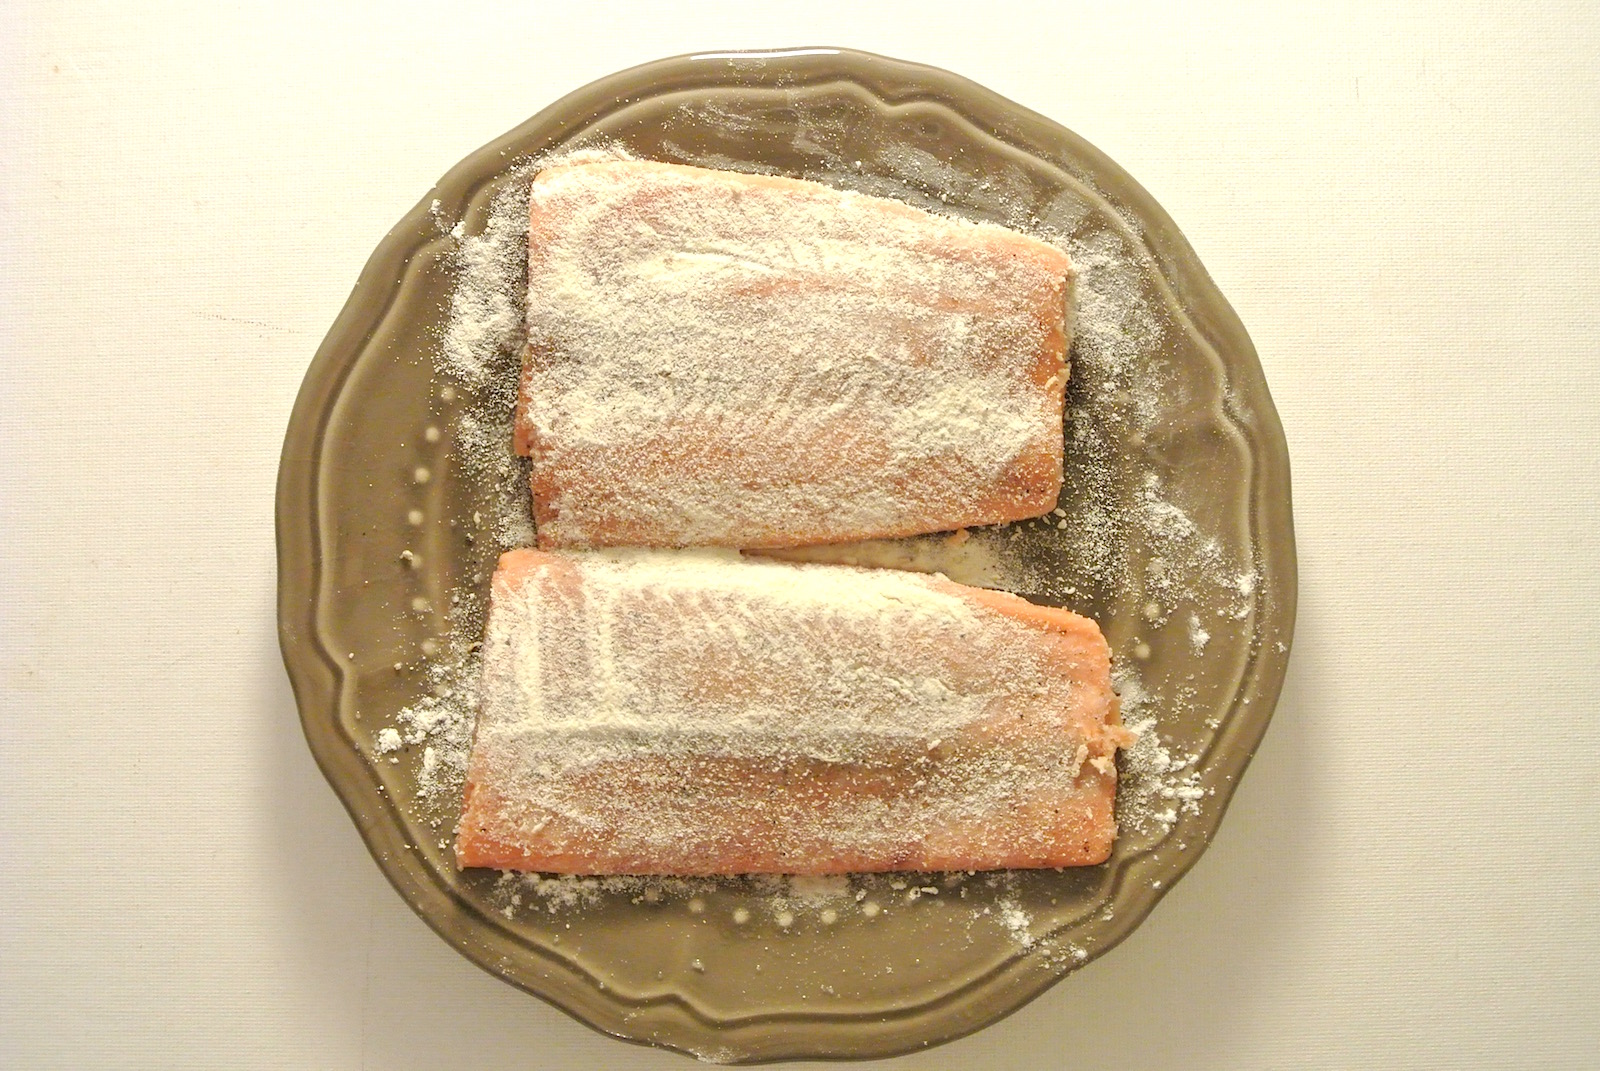 salmon3